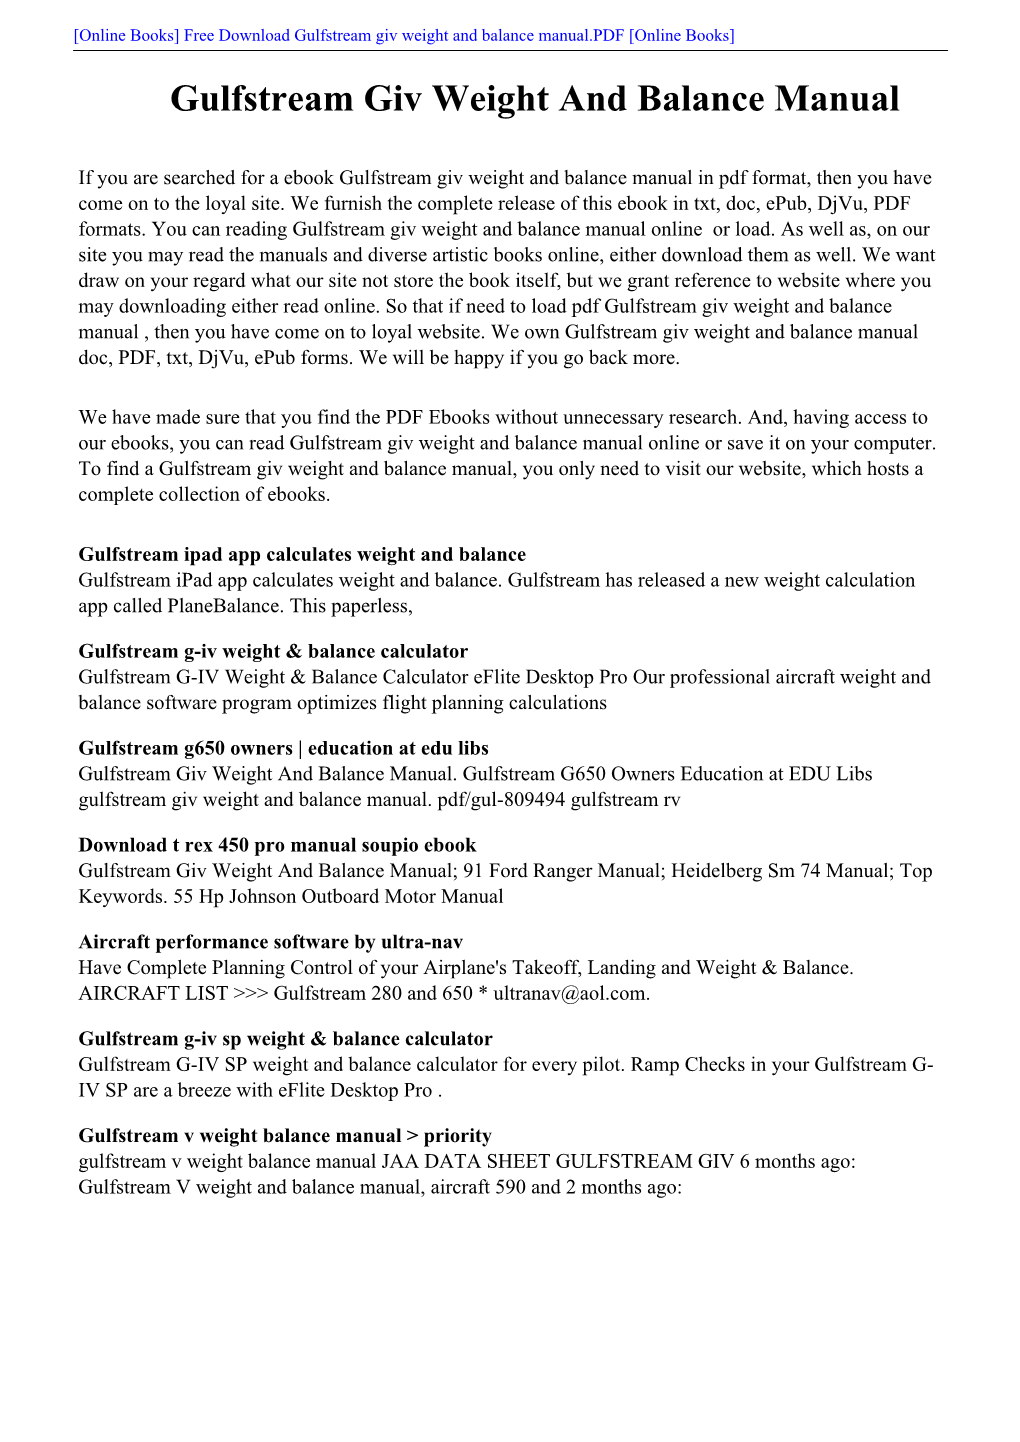 [PDF] Gulfstream Giv Weight and Balance Manual.Pdf